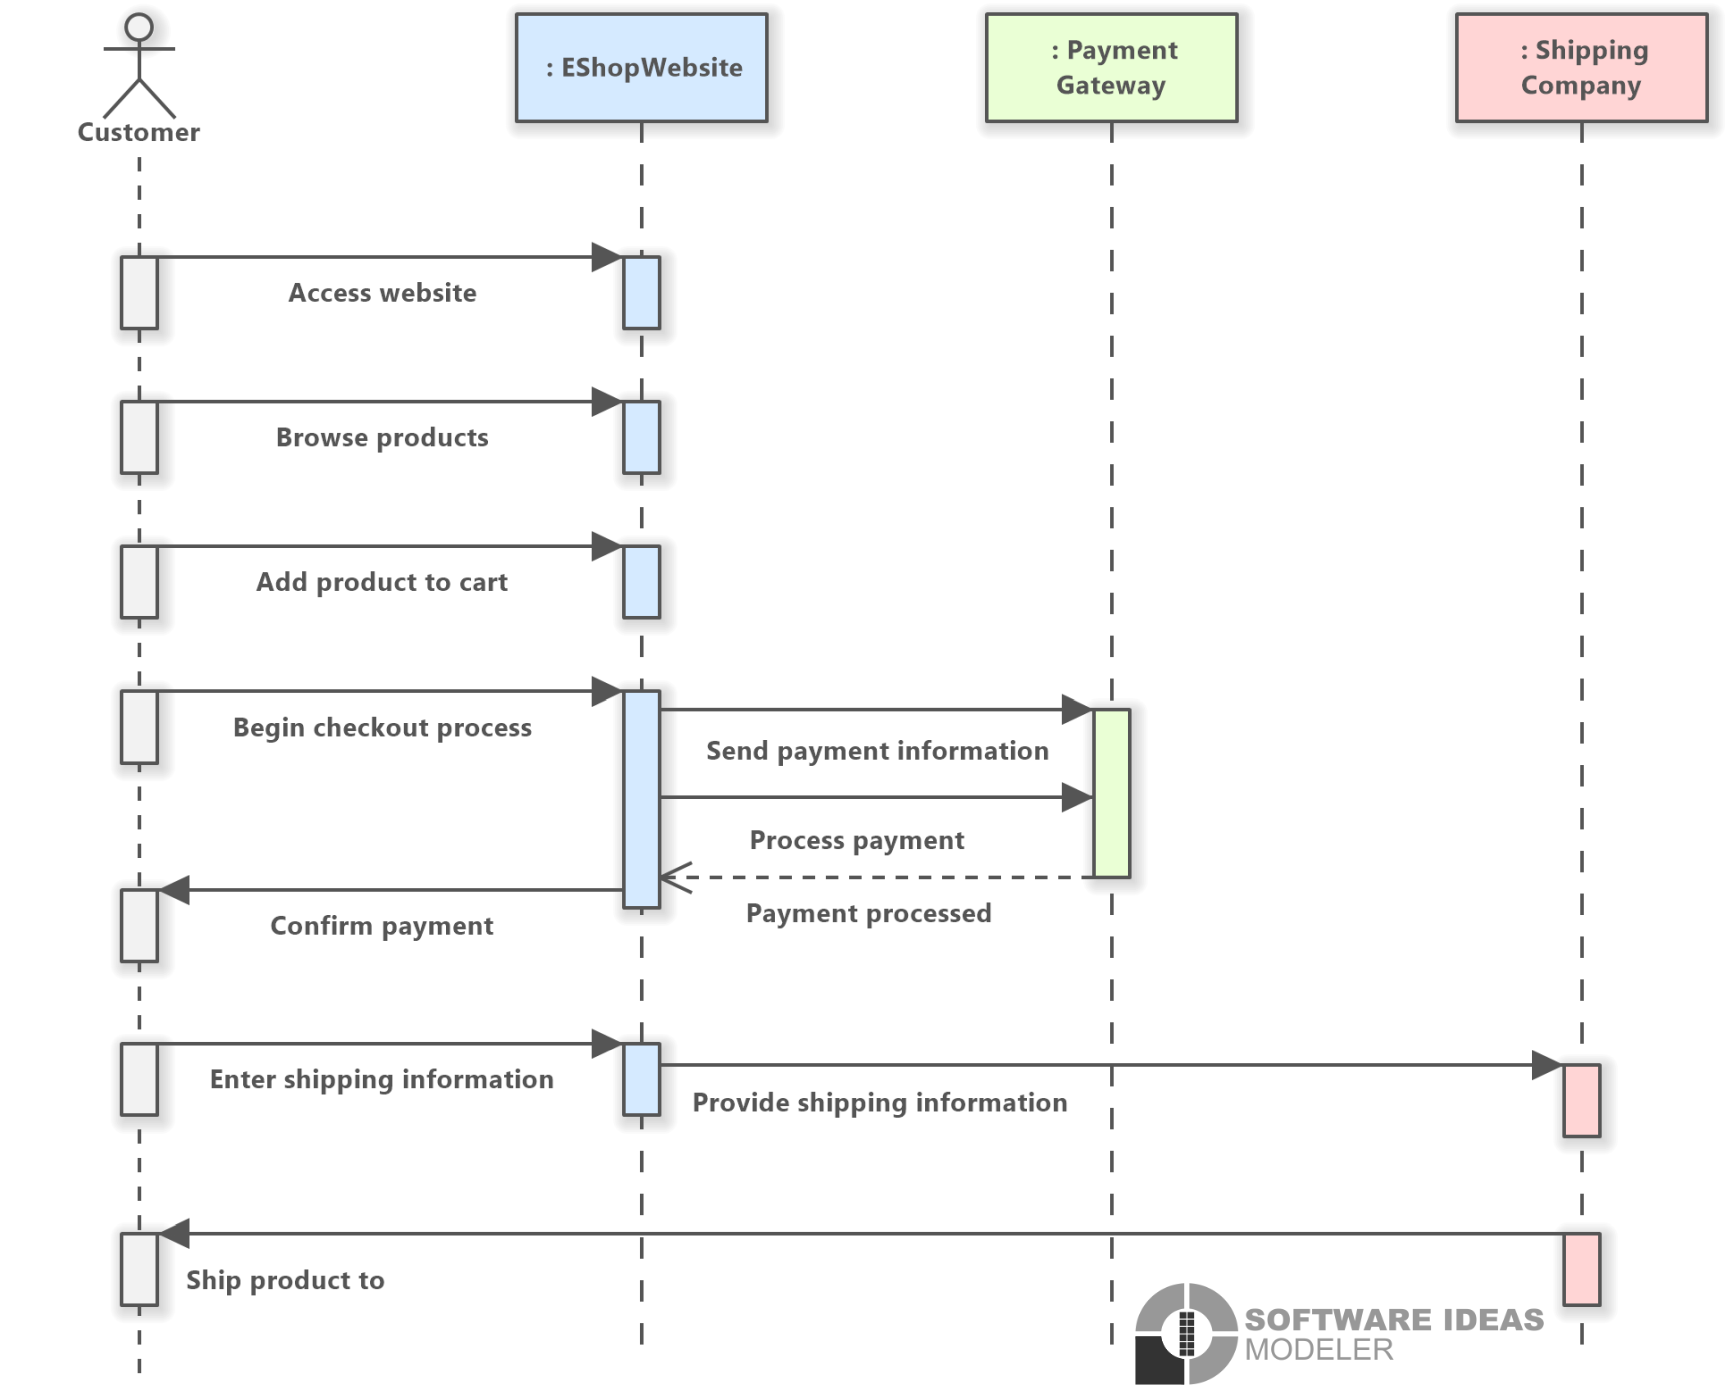 Online Shopping (UML Sequence Diagram) - Software Ideas Modeler